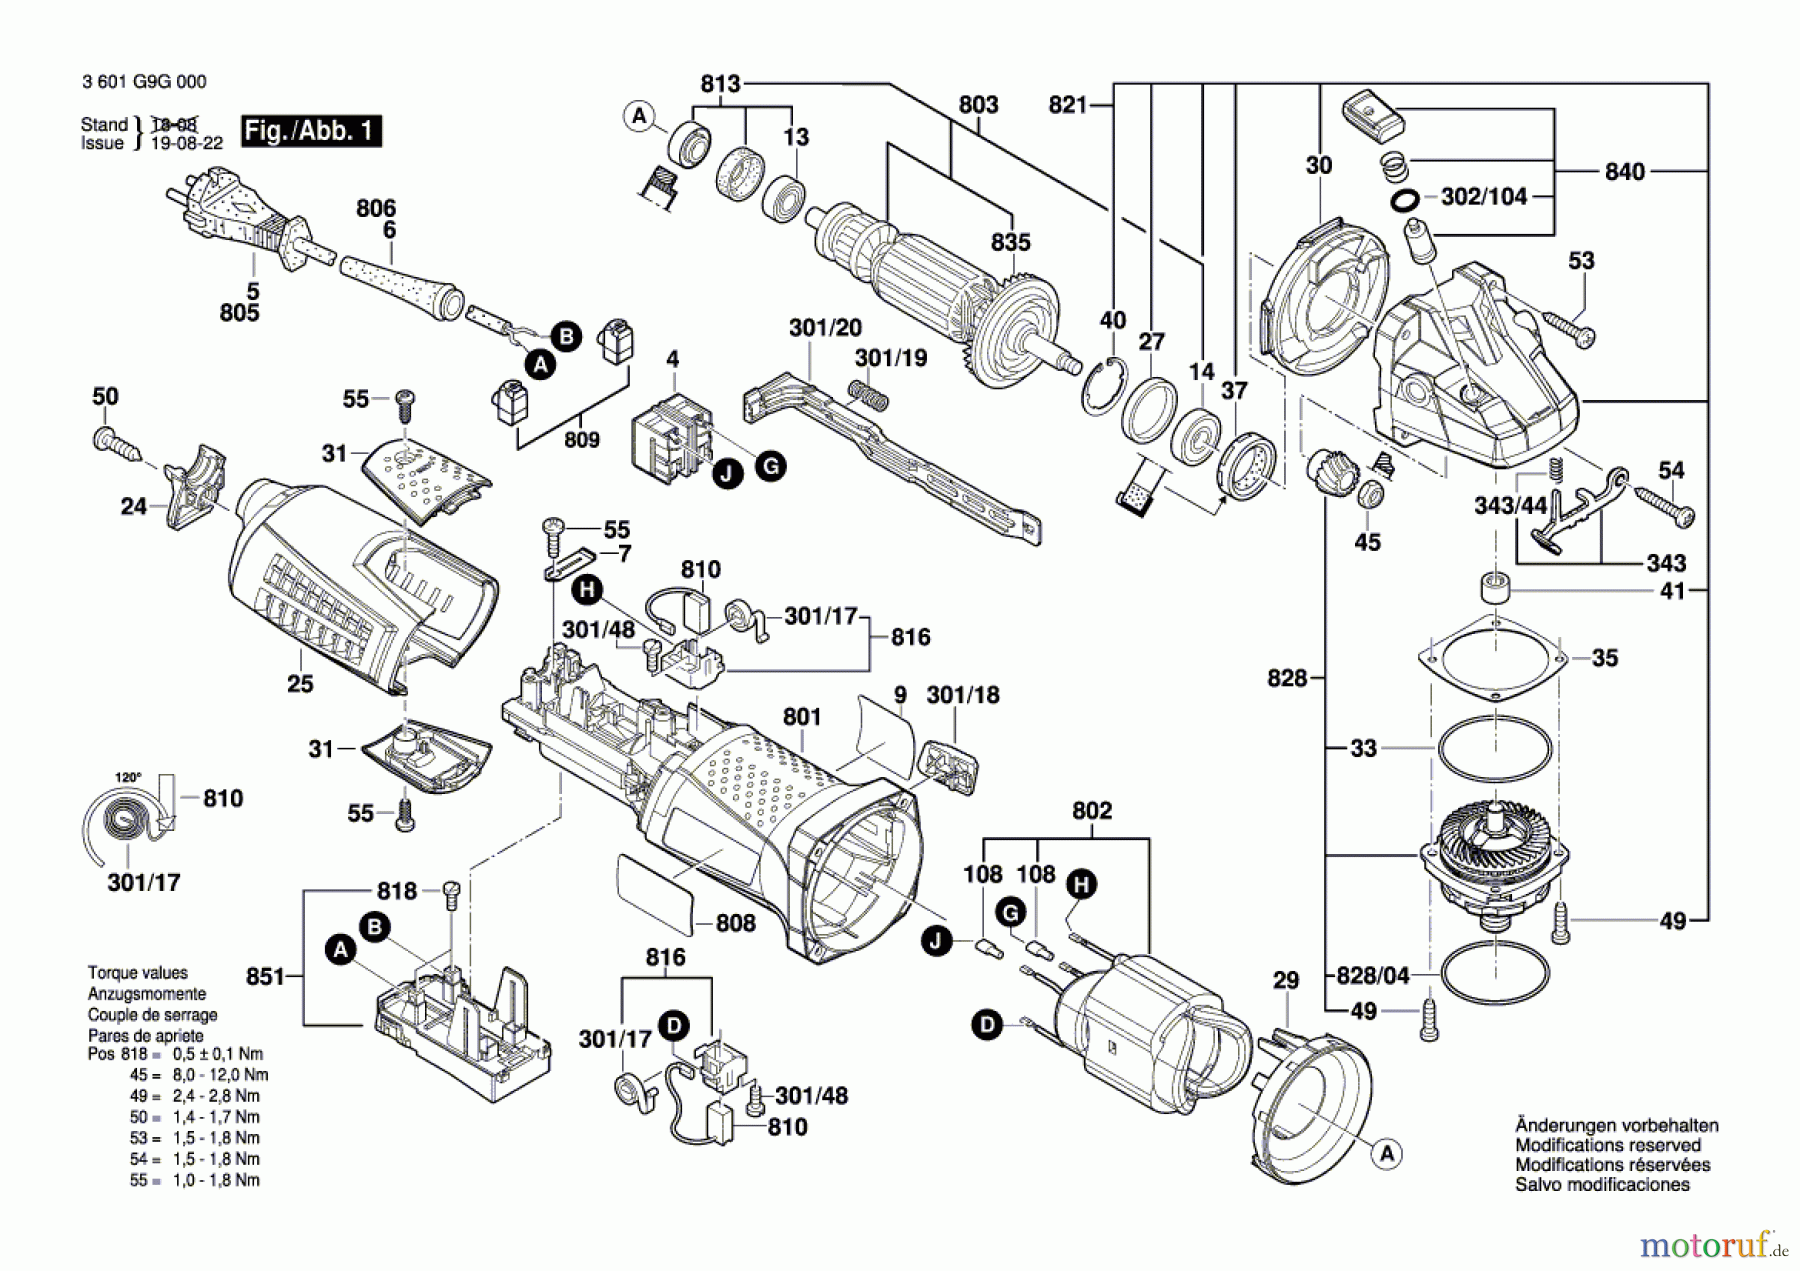  Bosch Werkzeug Winkelschleifer GWS 17-150 CI Seite 1